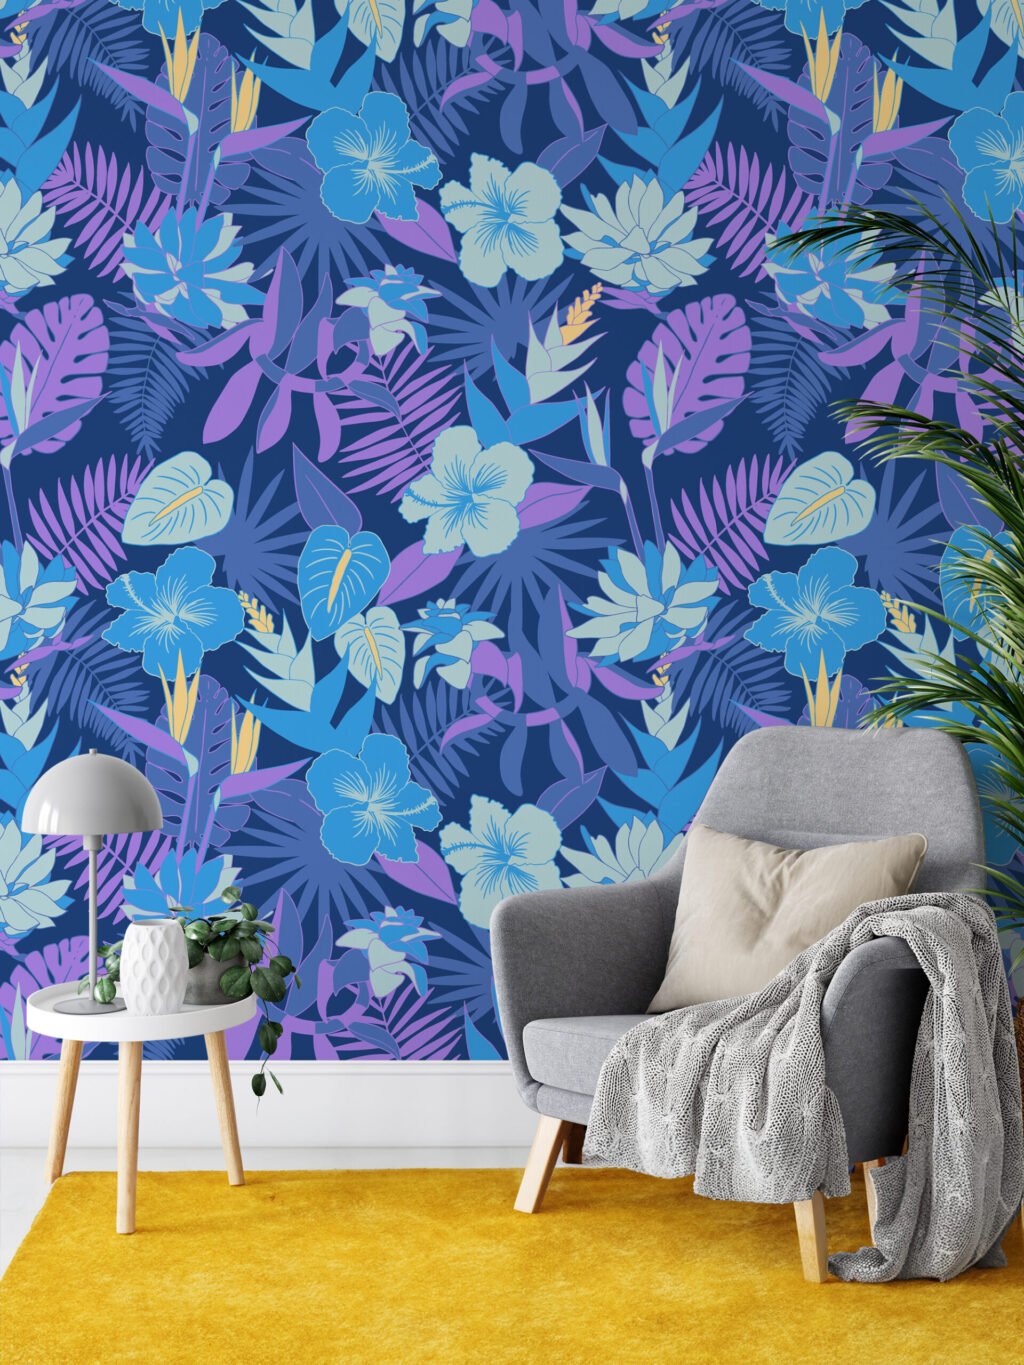 Mavi ve Mor Renkli Çiçekli Duvar Kağıdı, Canlı Tropik Gece Çiçekleri 3D Duvar Kağıdı Çiçekli Duvar Kağıtları 6